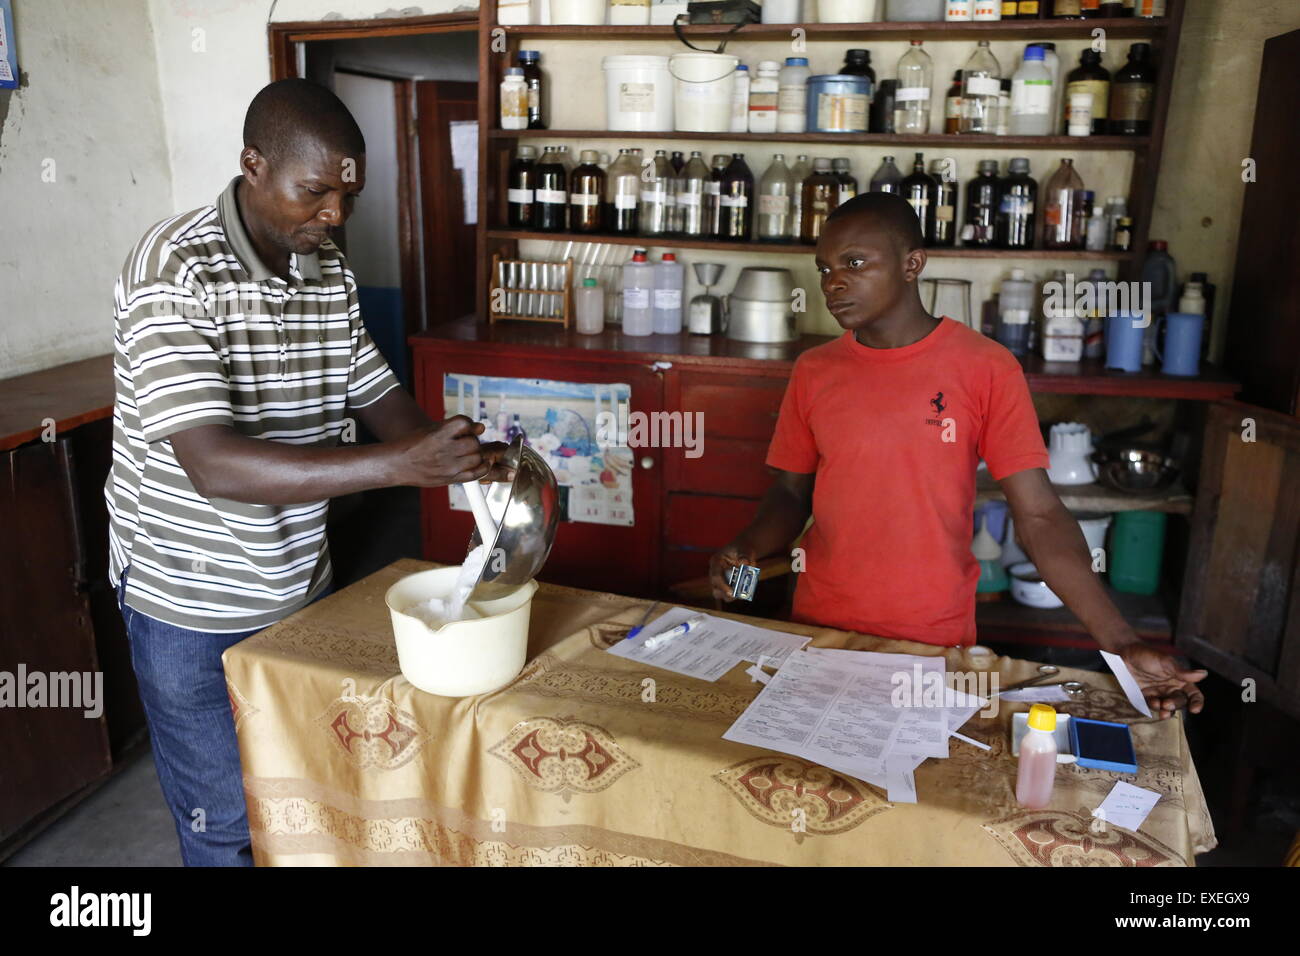 Los farmacéuticos la preparación de medicamentos, hospital y centro de salud, distrito Kawongo Matamba-Solo,, en la provincia de Bandundu Foto de stock